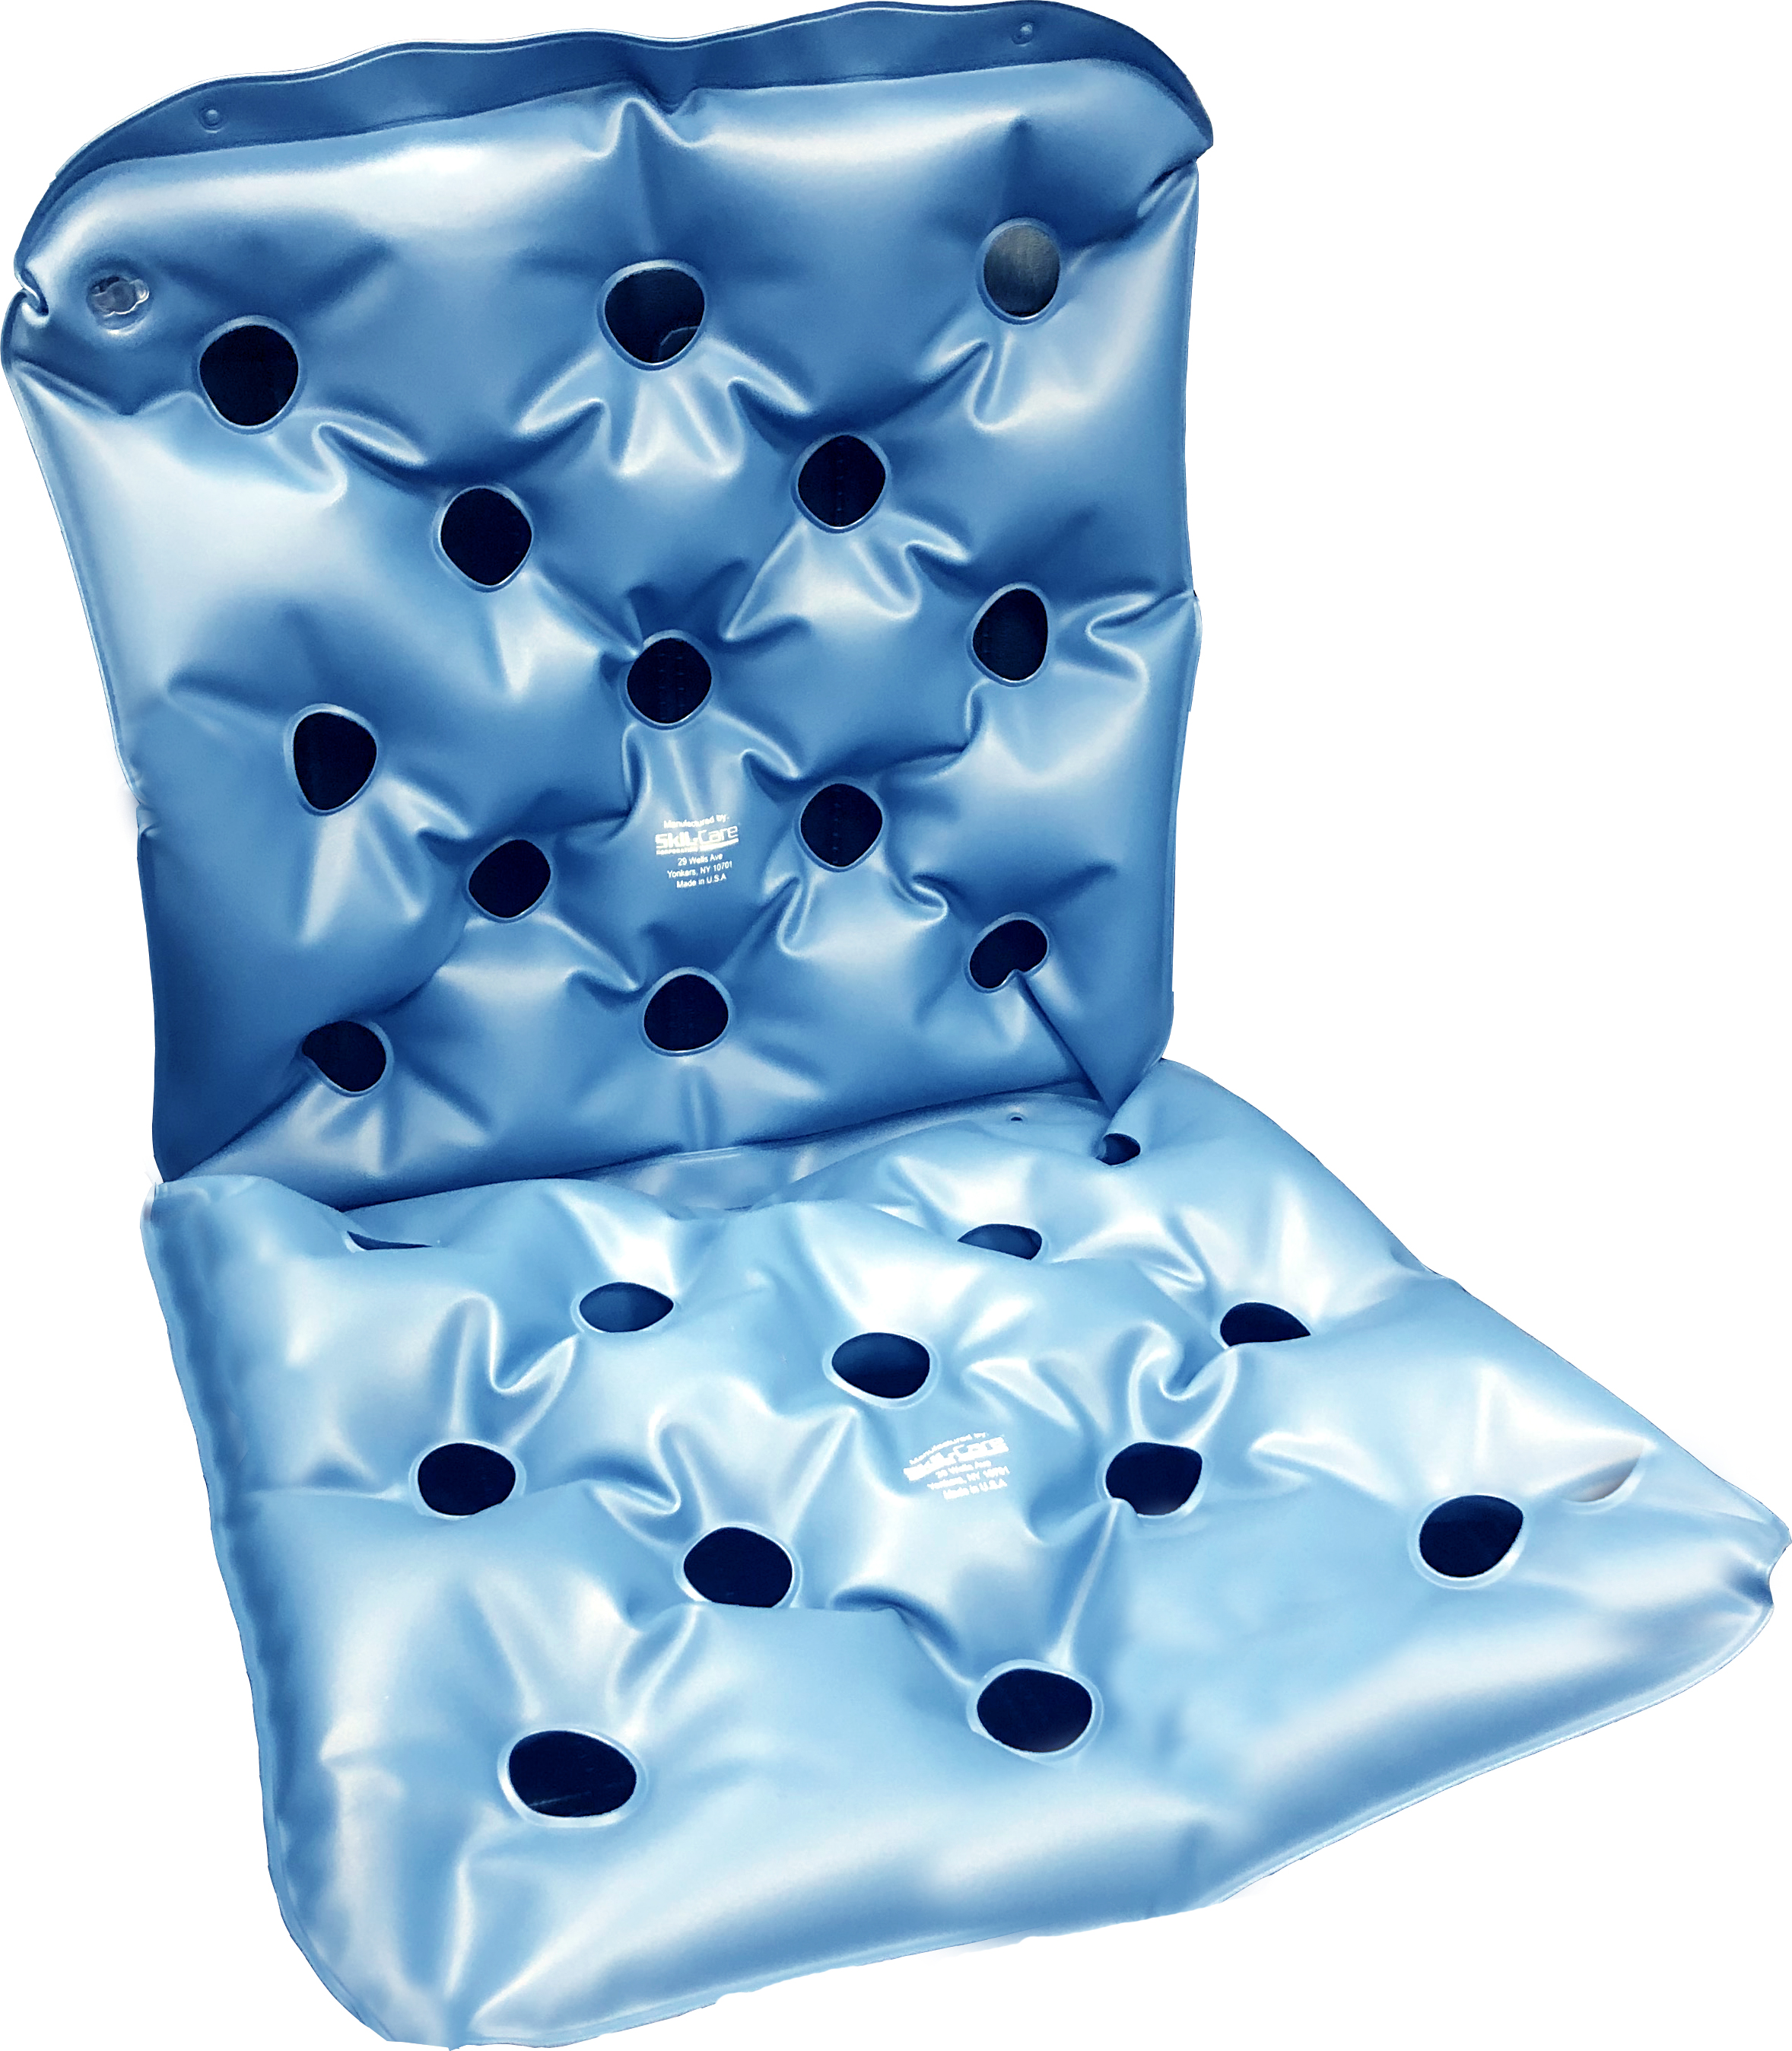 MobiCushion Alternating Air Pressure Cushion : pressure sore healing cushion